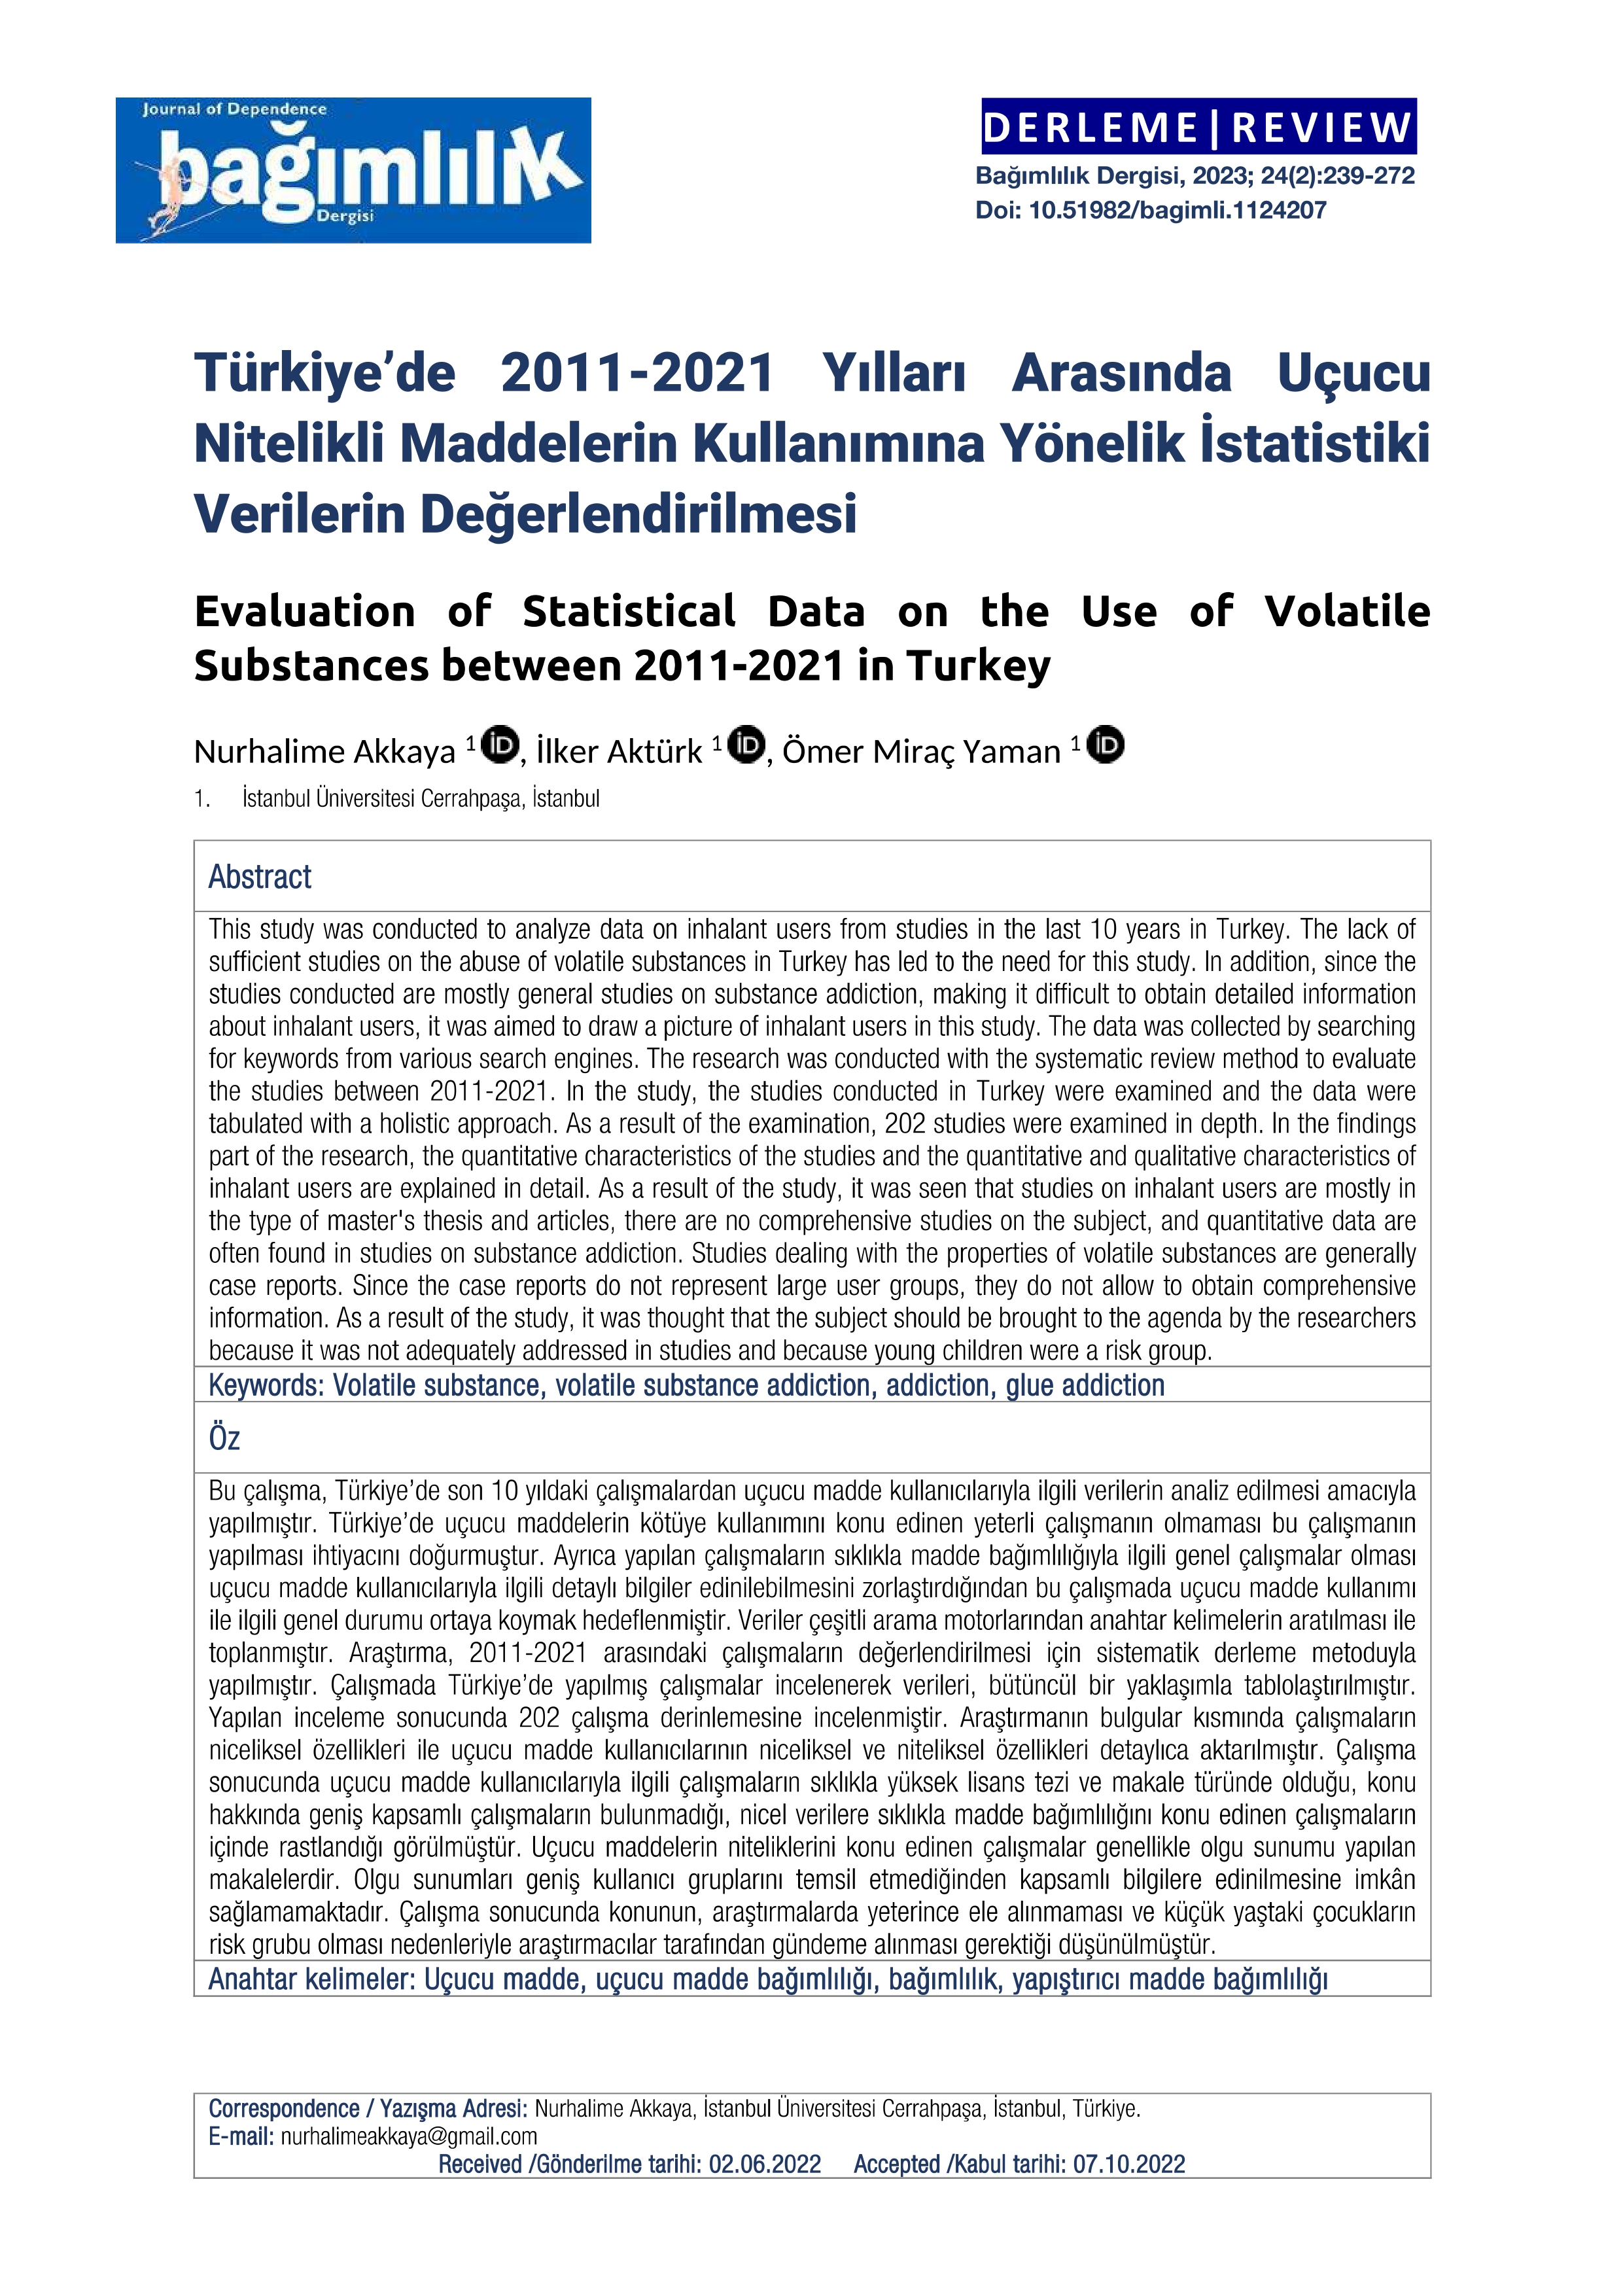 Türkiye’de 2011-2021 Yılları Arasında Uçucu Nitelikli Maddelerin Kullanımına Yönelik İstatistiki Verilerin Değerlendirilmesi 